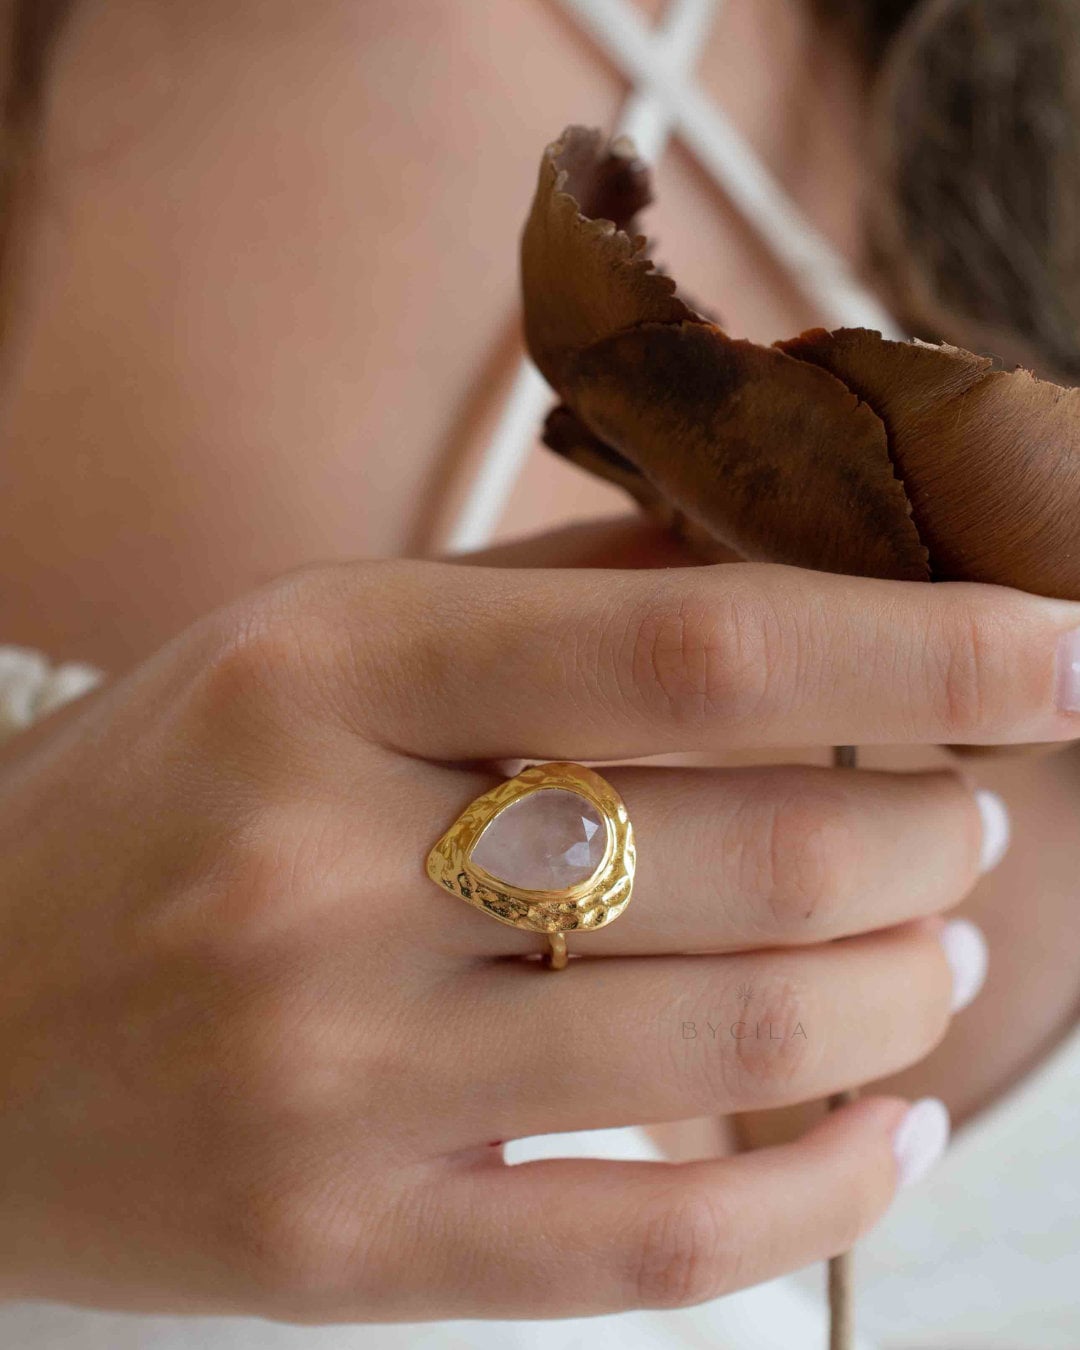 Rose Quartz Ring * 18k Gold Plated Ring * Statement Ring * Gemstone Ring * Pink * Bridal Ring * Wedding Ring *Organic Ring * Natural *BJR295